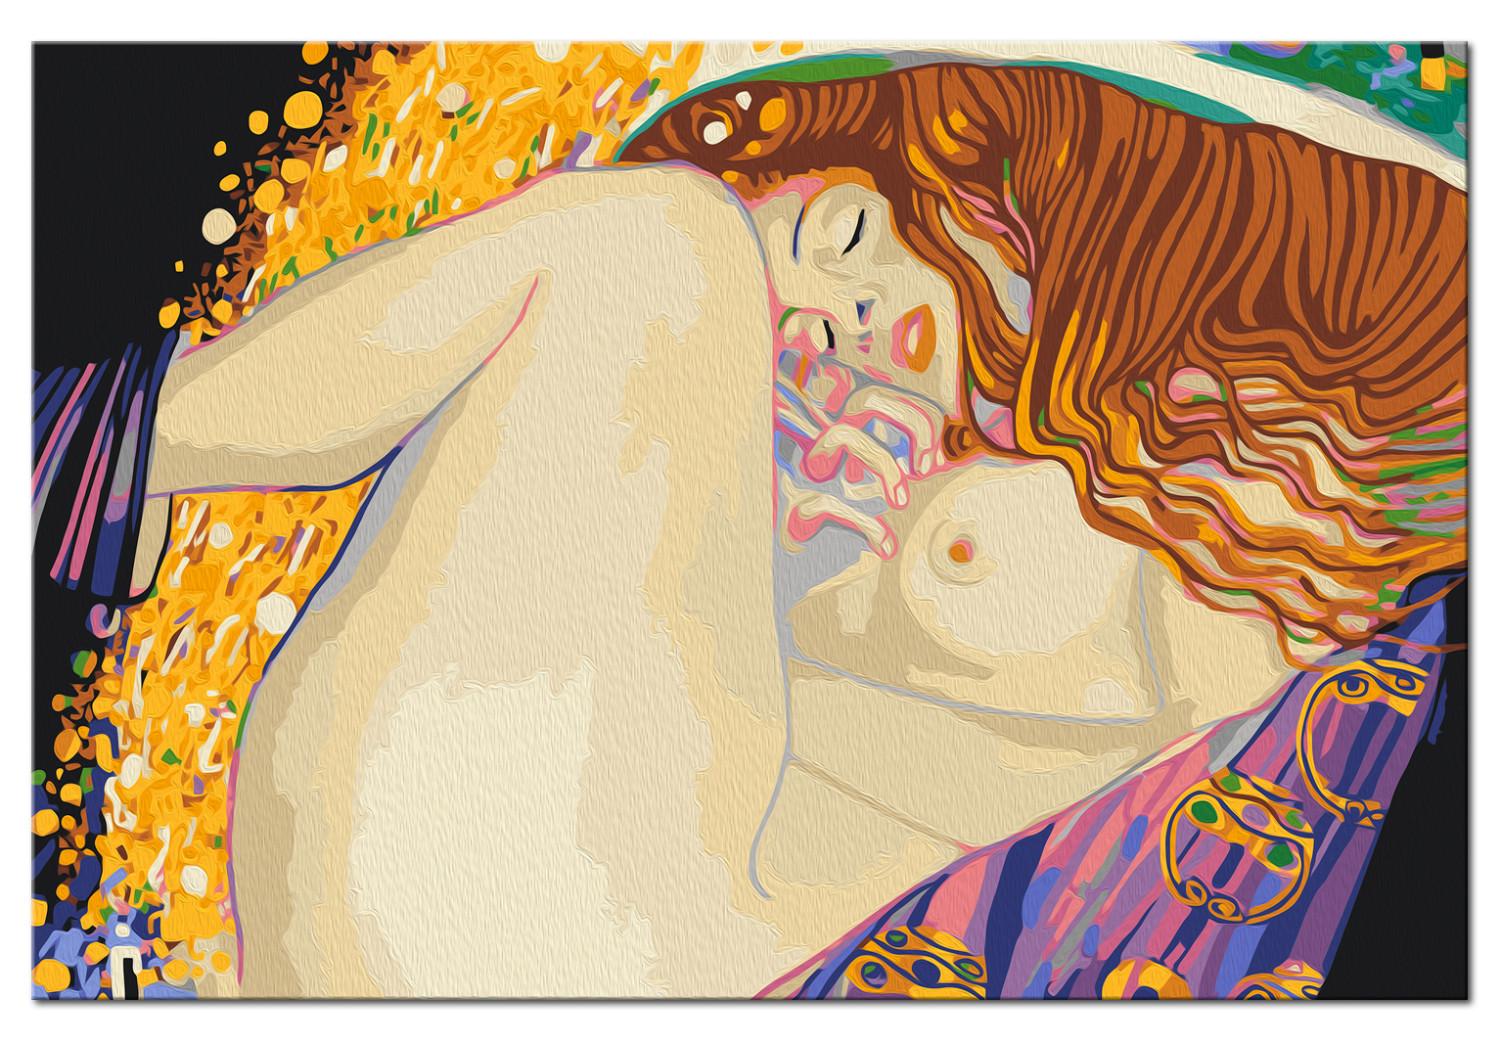 Paint by Number Kit Gustav Klimt: Danae